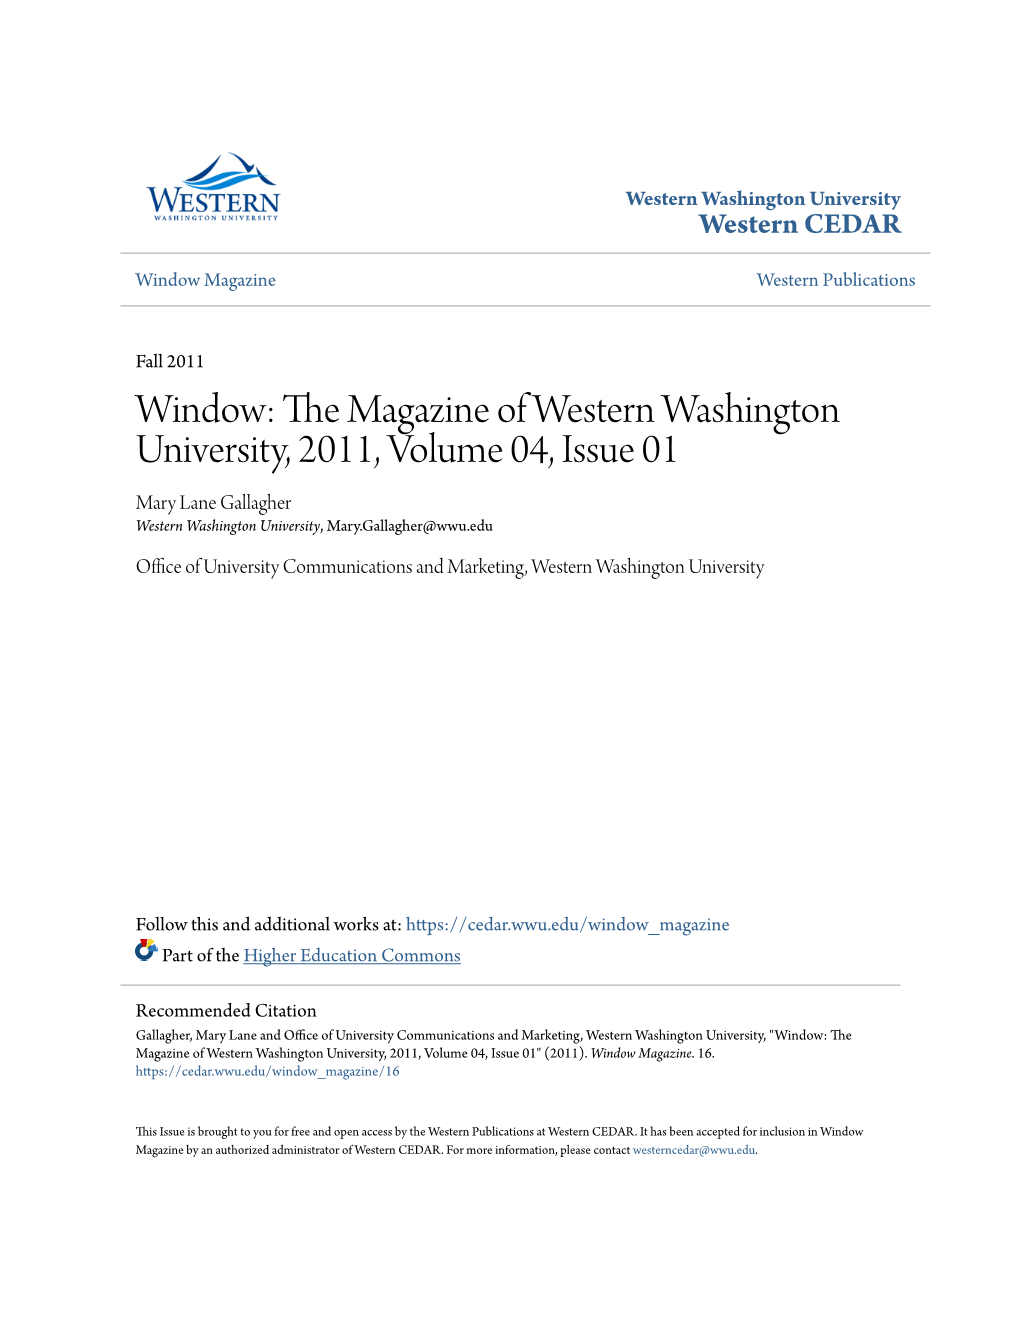 Window: the Magazine of Western Washington University, 2011, Volume 04, Issue 01" (2011)